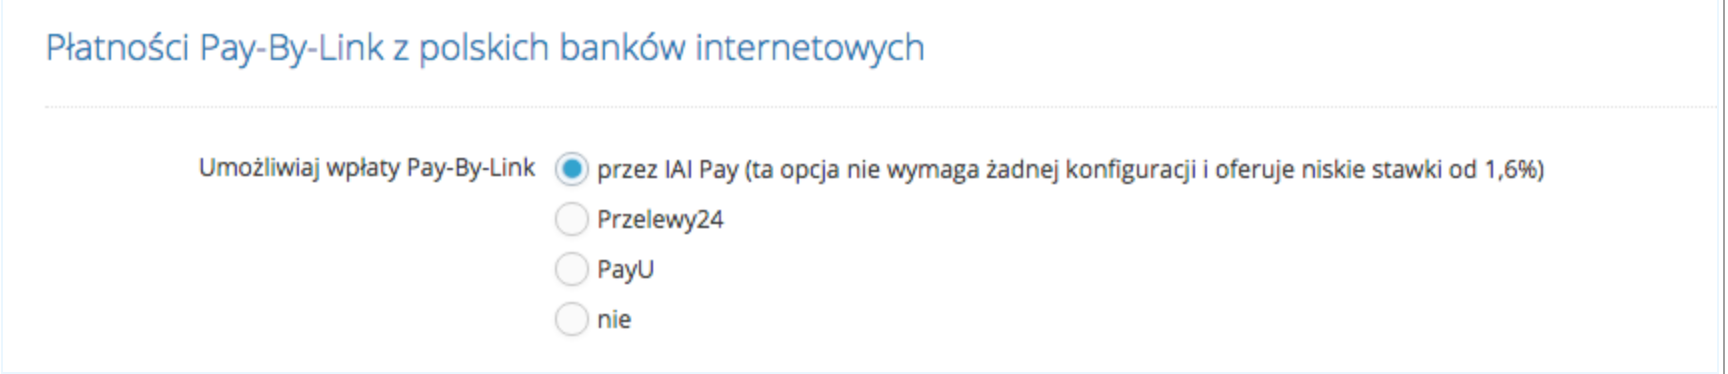 Płatności Pay-By-Link z polskich banków internetowych